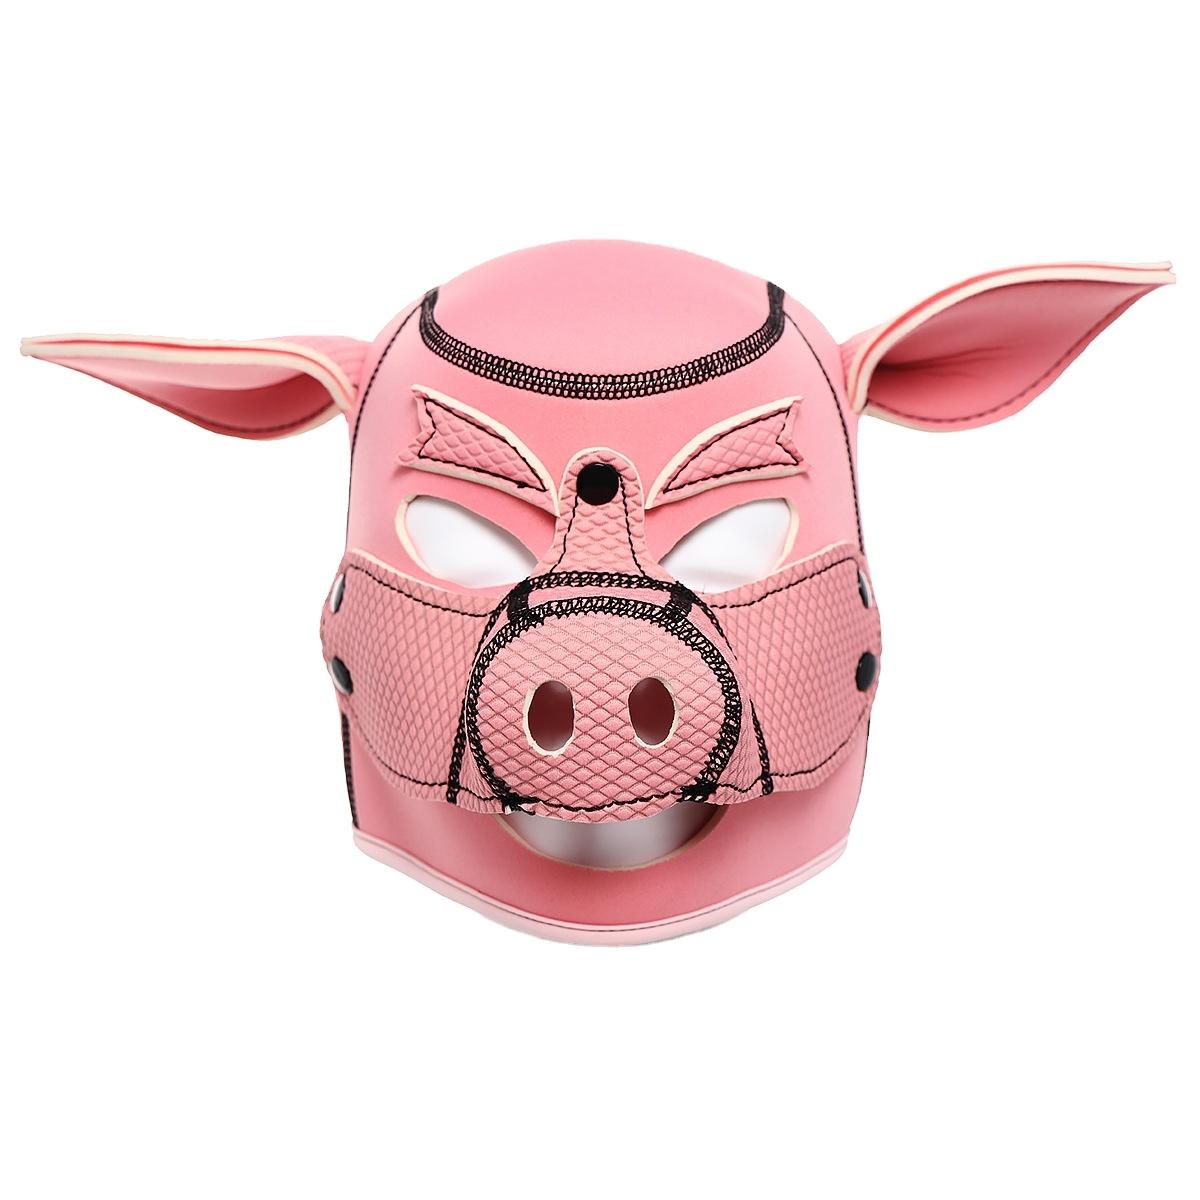 Neoprene Bondage Fetish Piggy Mask Black Full Face Breathable Restraint Head Hood For Adults